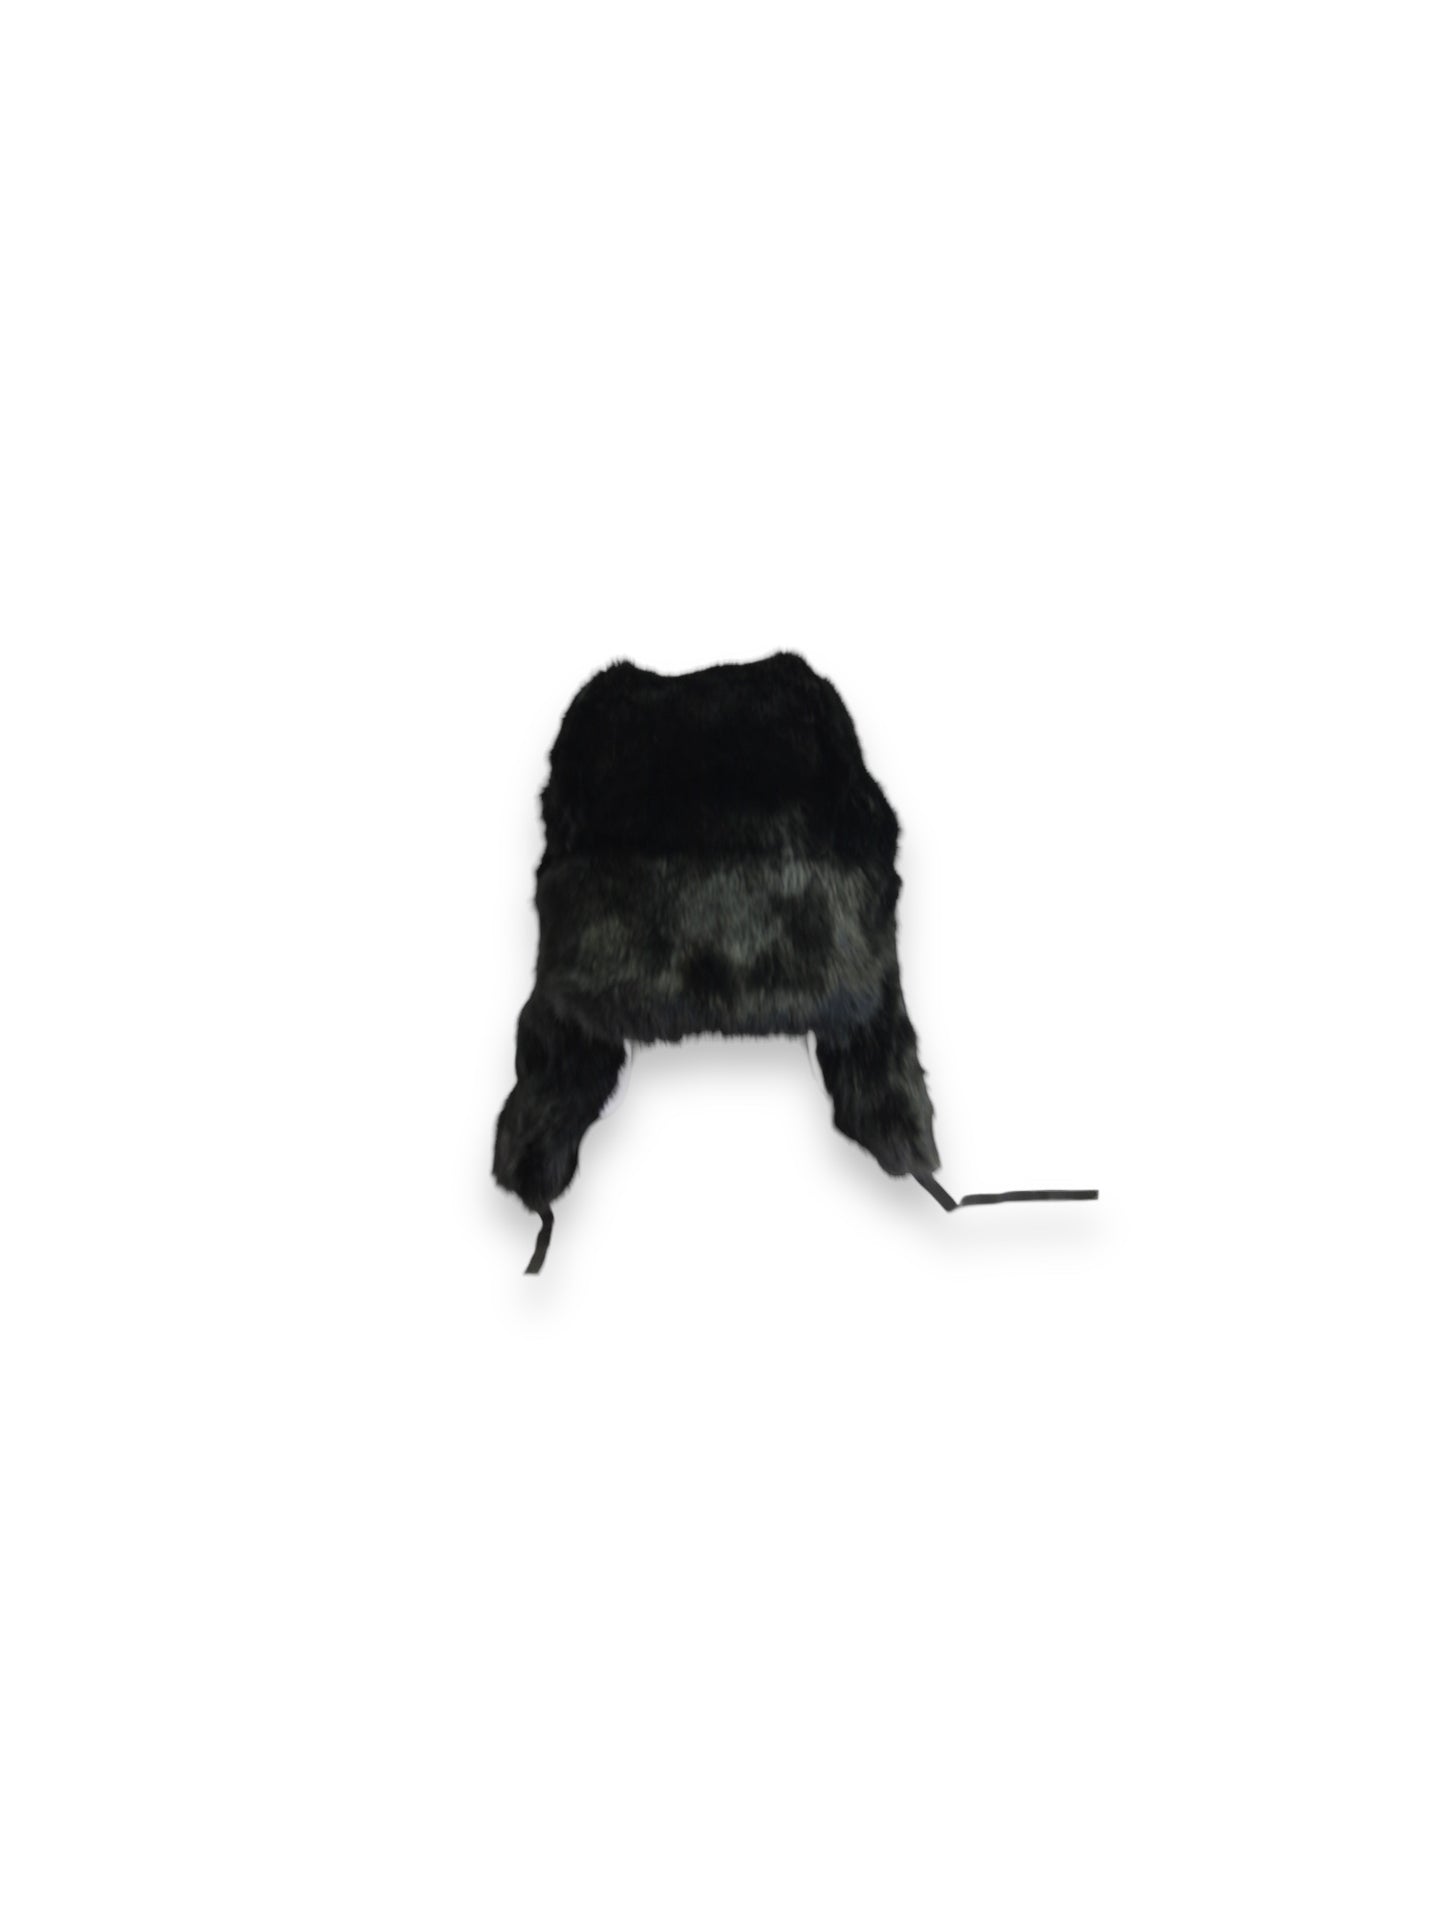 Chthonic Emblem Premium 100% Rabbit Fur Black Trapper Hat